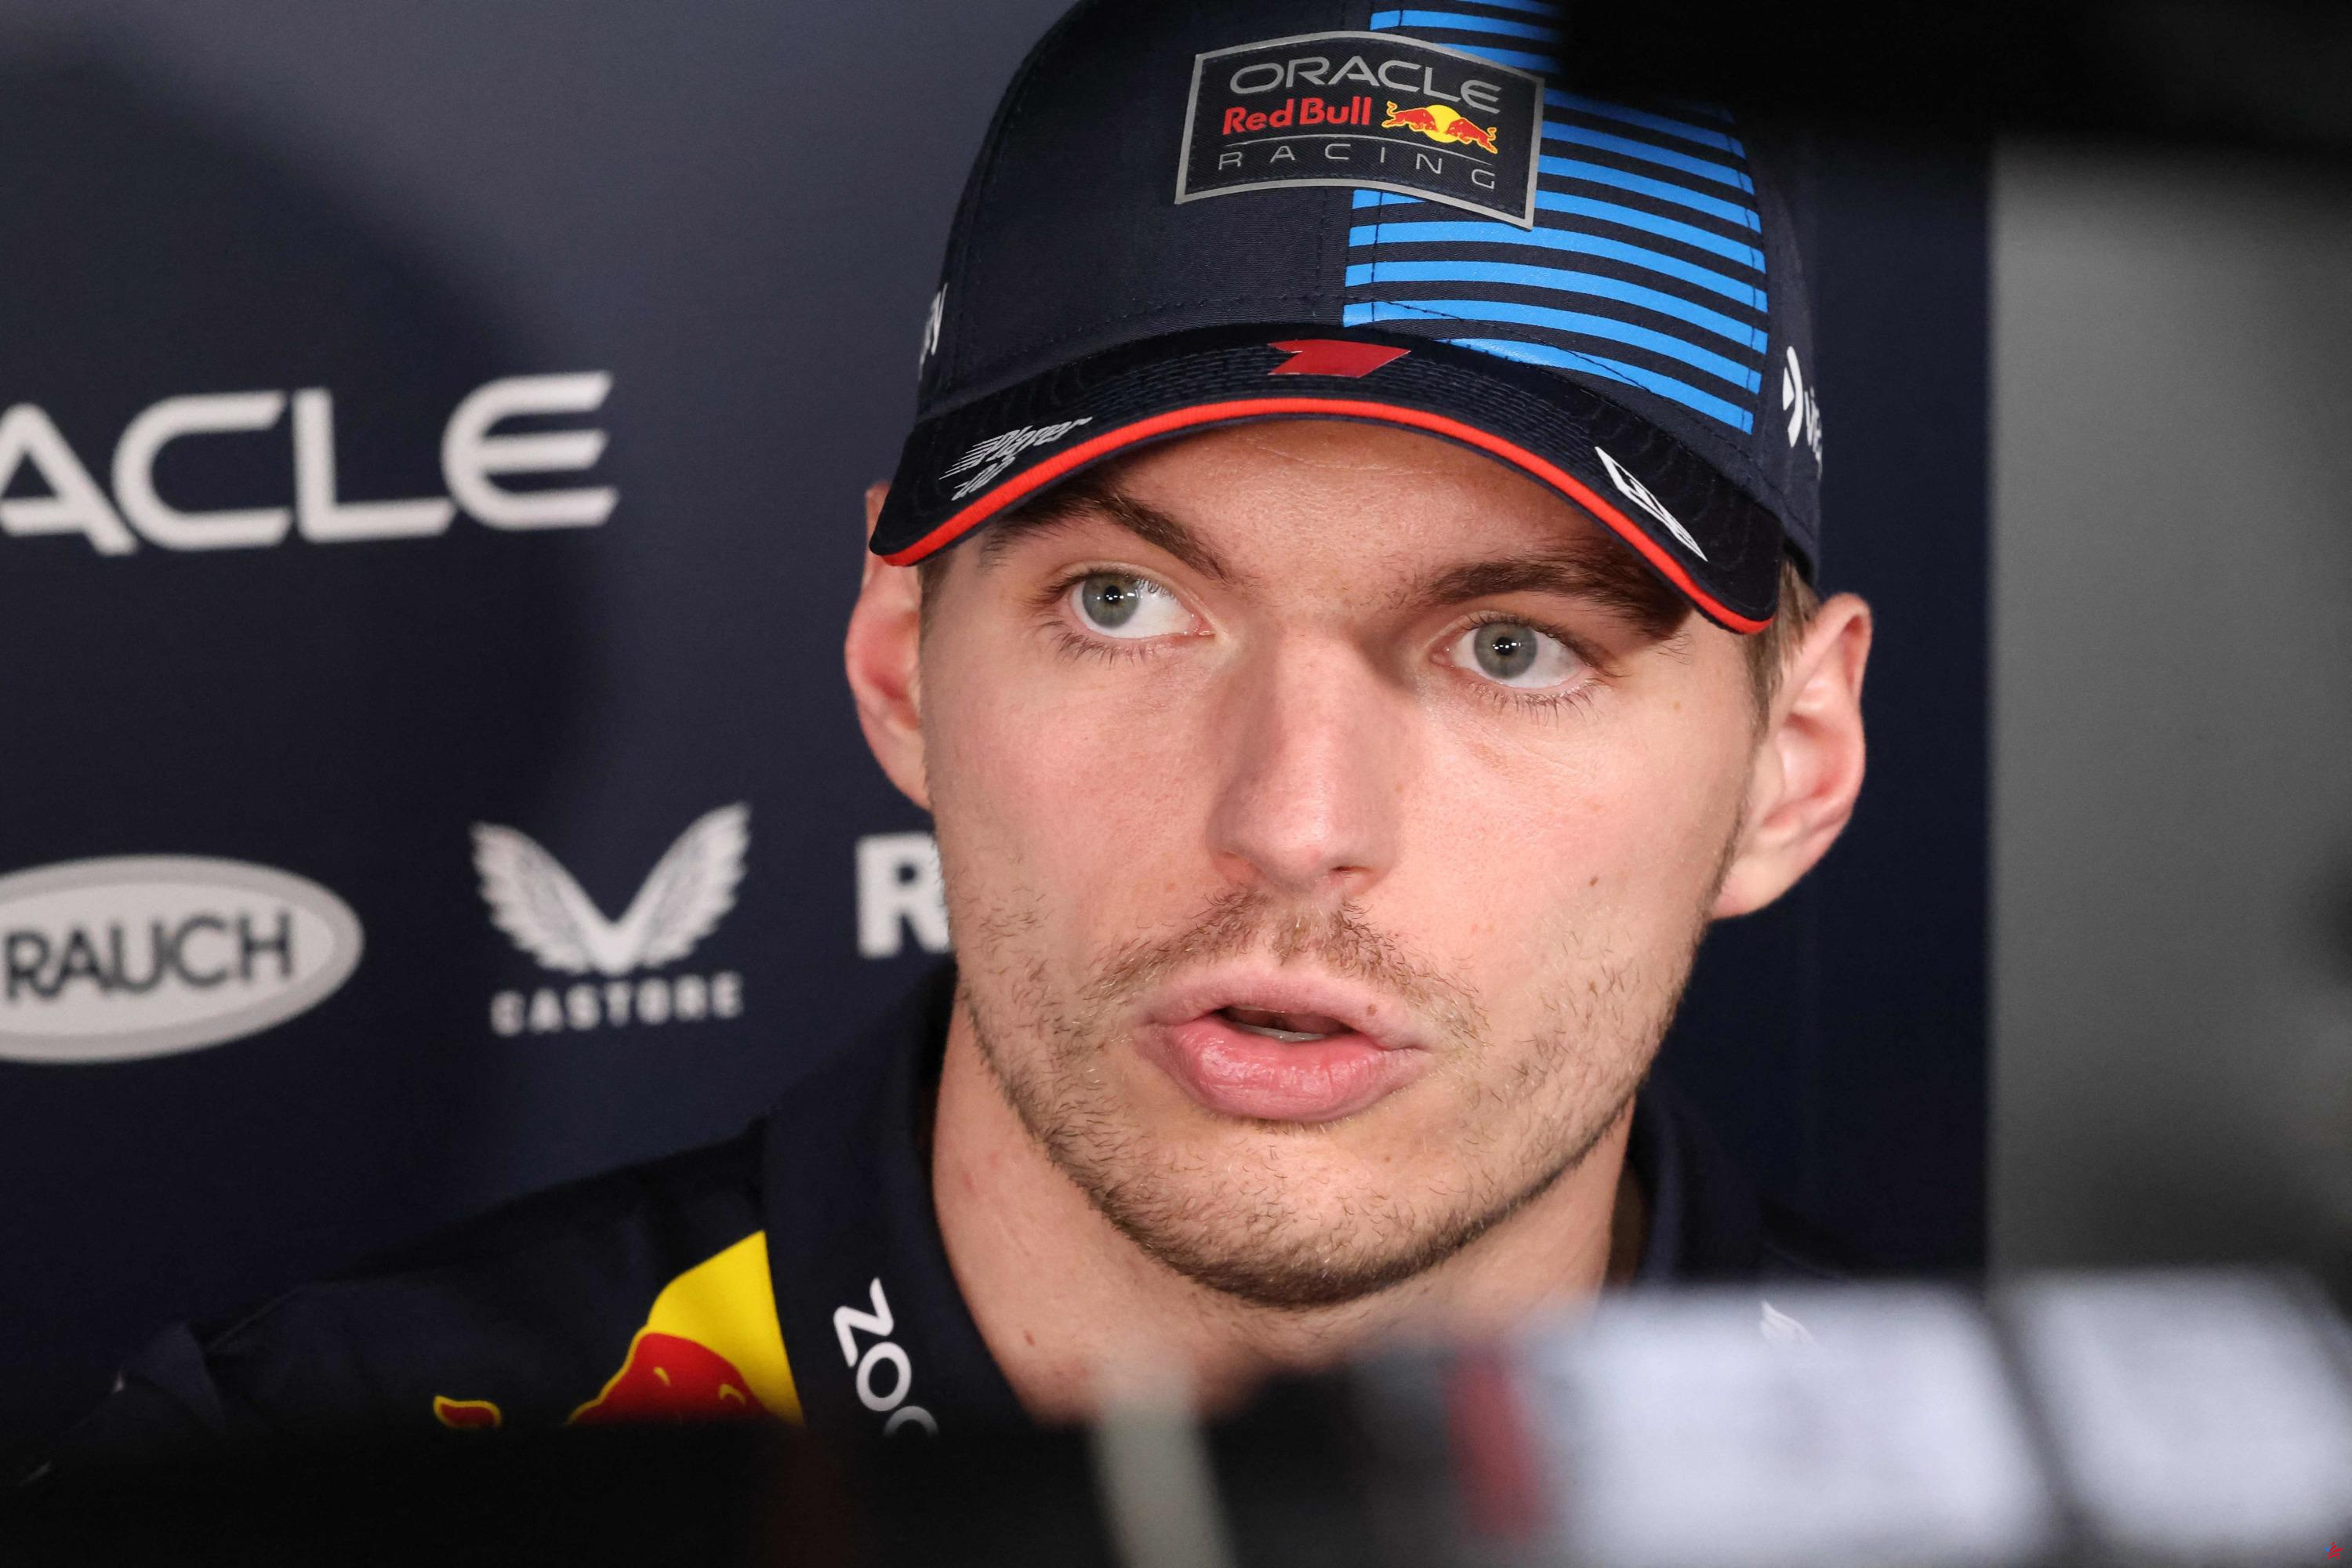 Fórmula 1: Verstappen “no tiene motivos” para dejar Red Bull